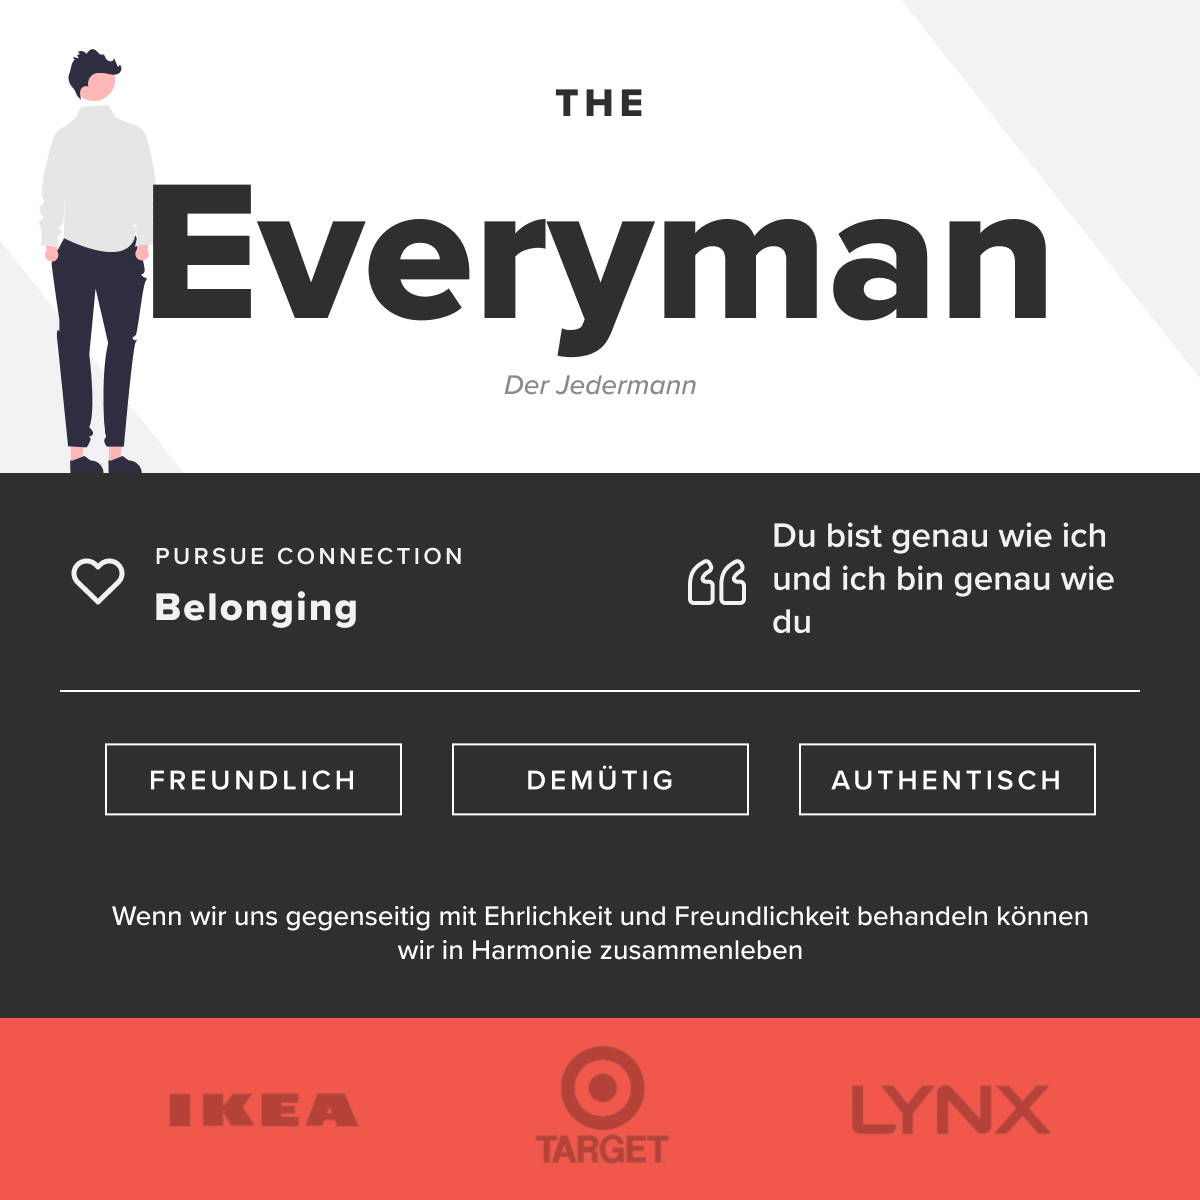 Der Jedermann – eine Website mit einem Bild eines Mannes und einer Frau, die einen Überblick, Erklärungen, Beispiele und Tests für die 12 Archetypen im Branding bietet.